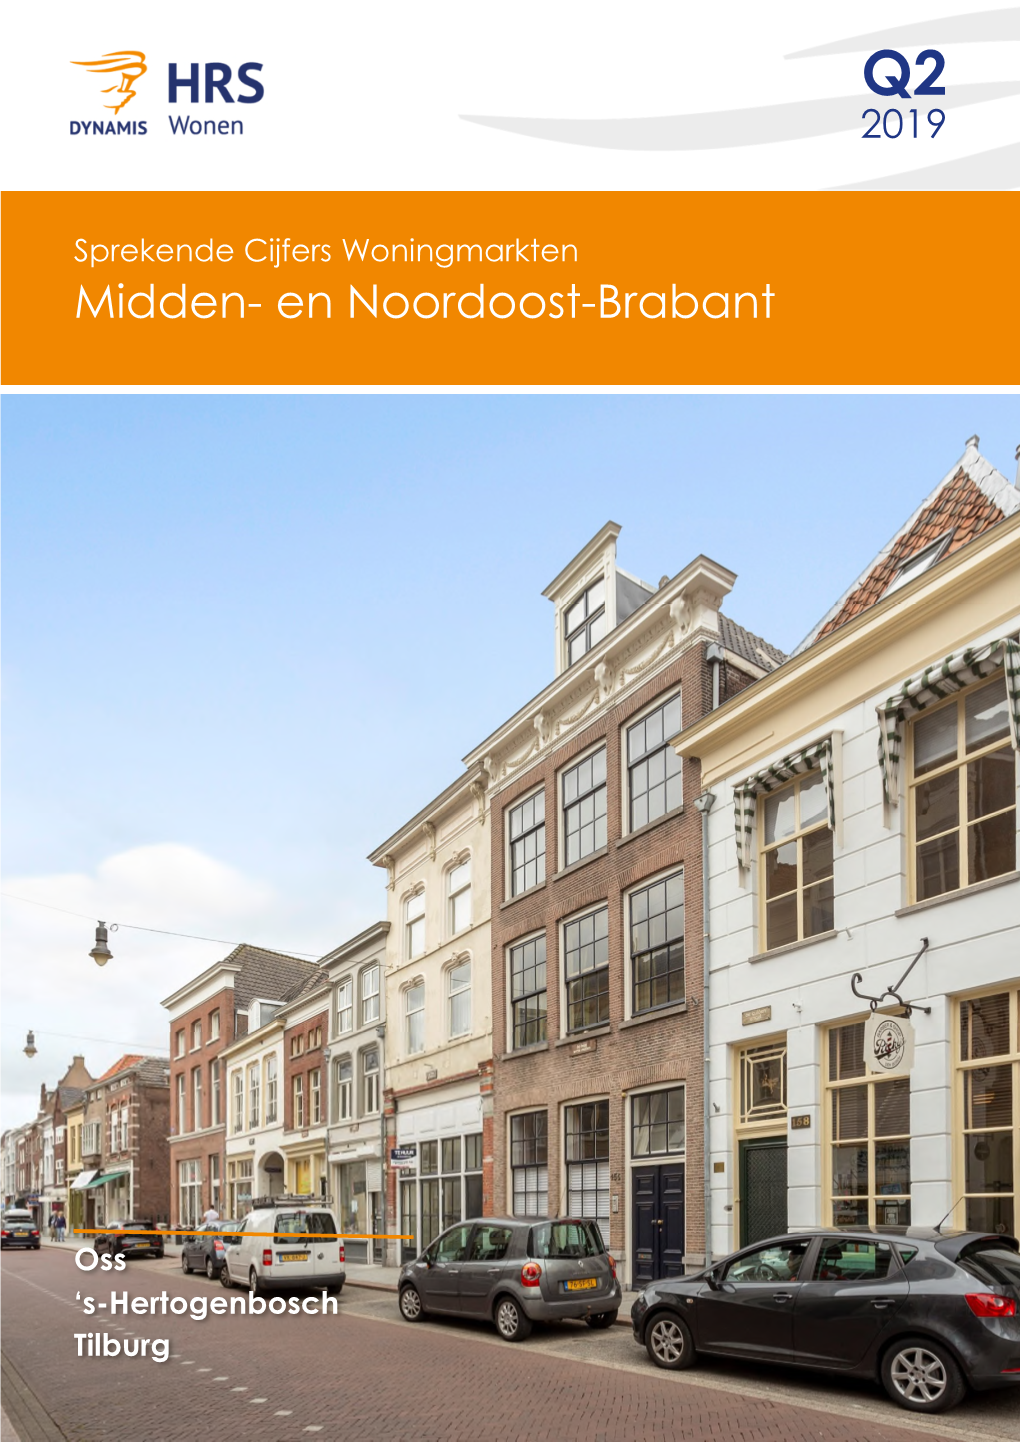 En Noordoost-Brabant